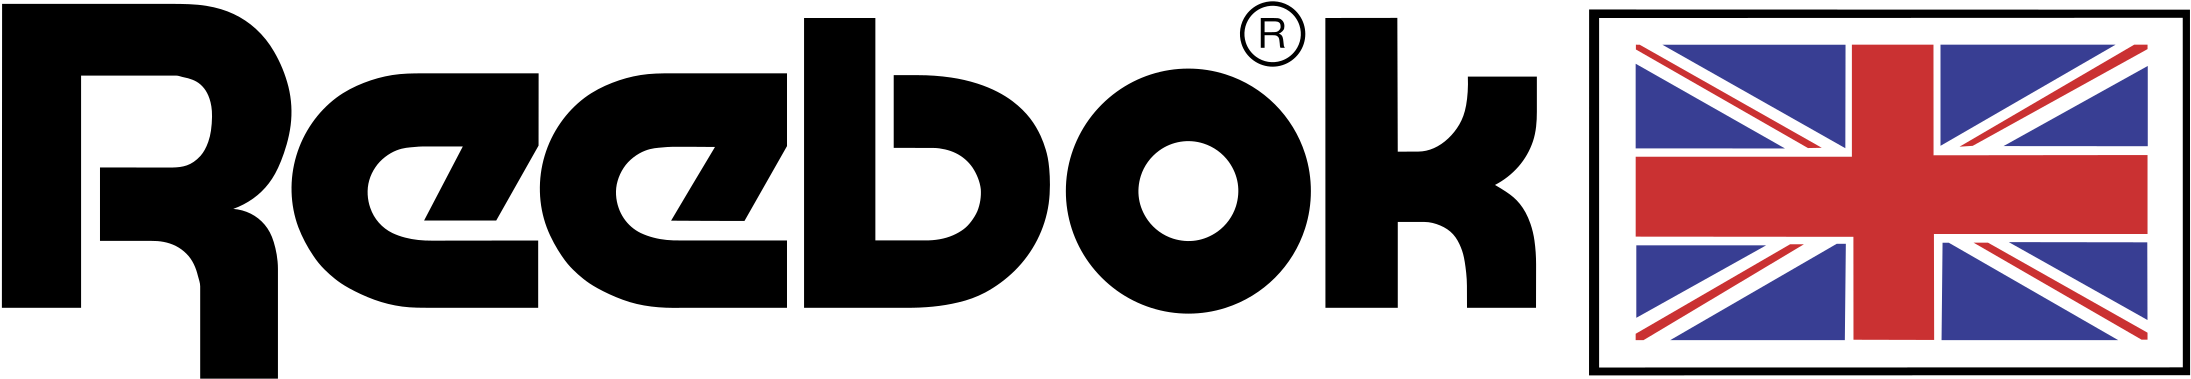 Reebok Logo Transparent File